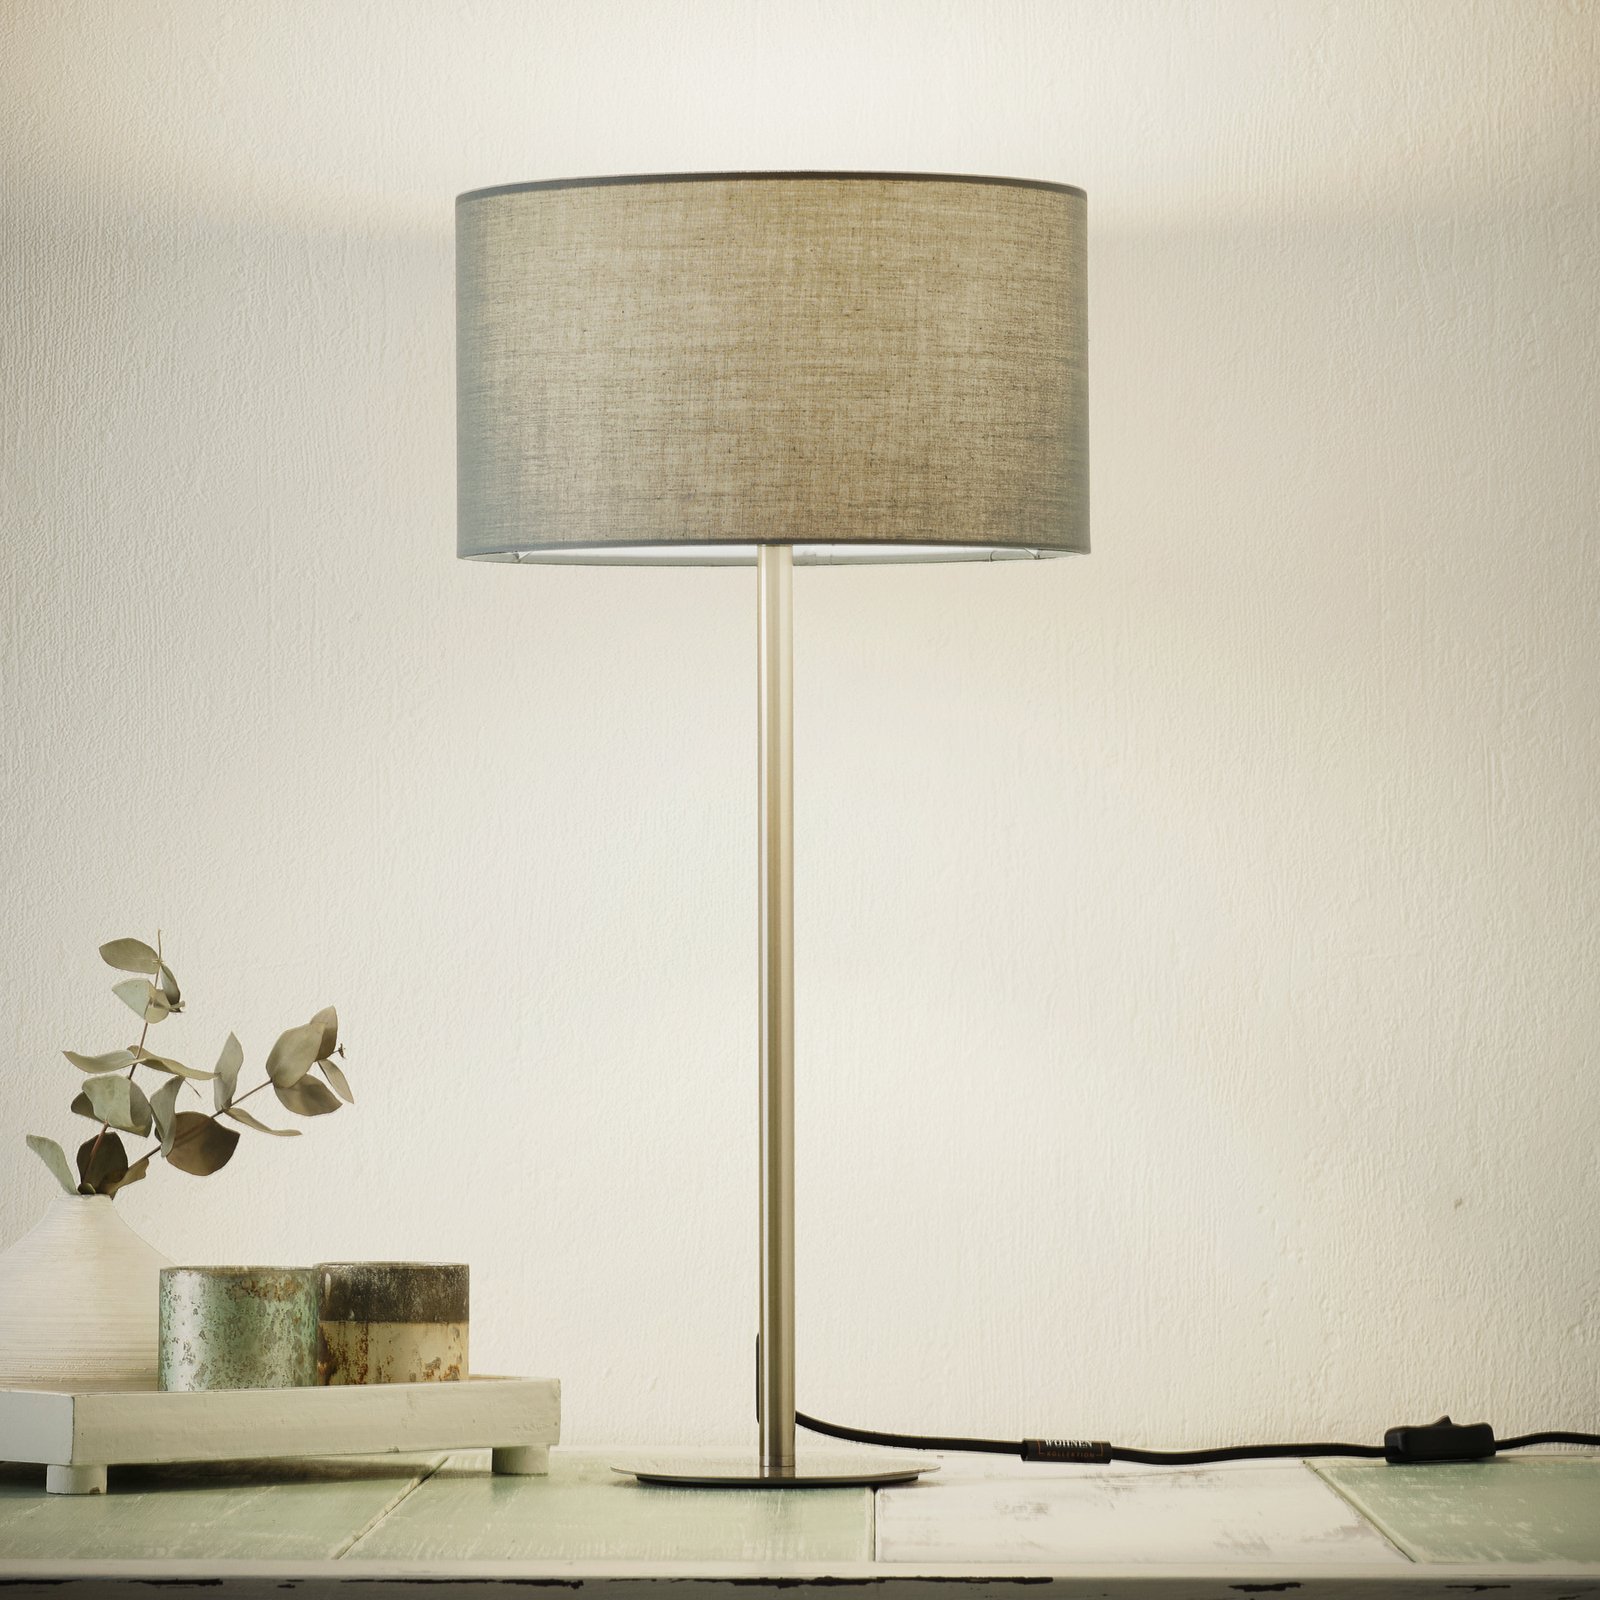 Schöner Wohnen Pina table lamp, dark grey